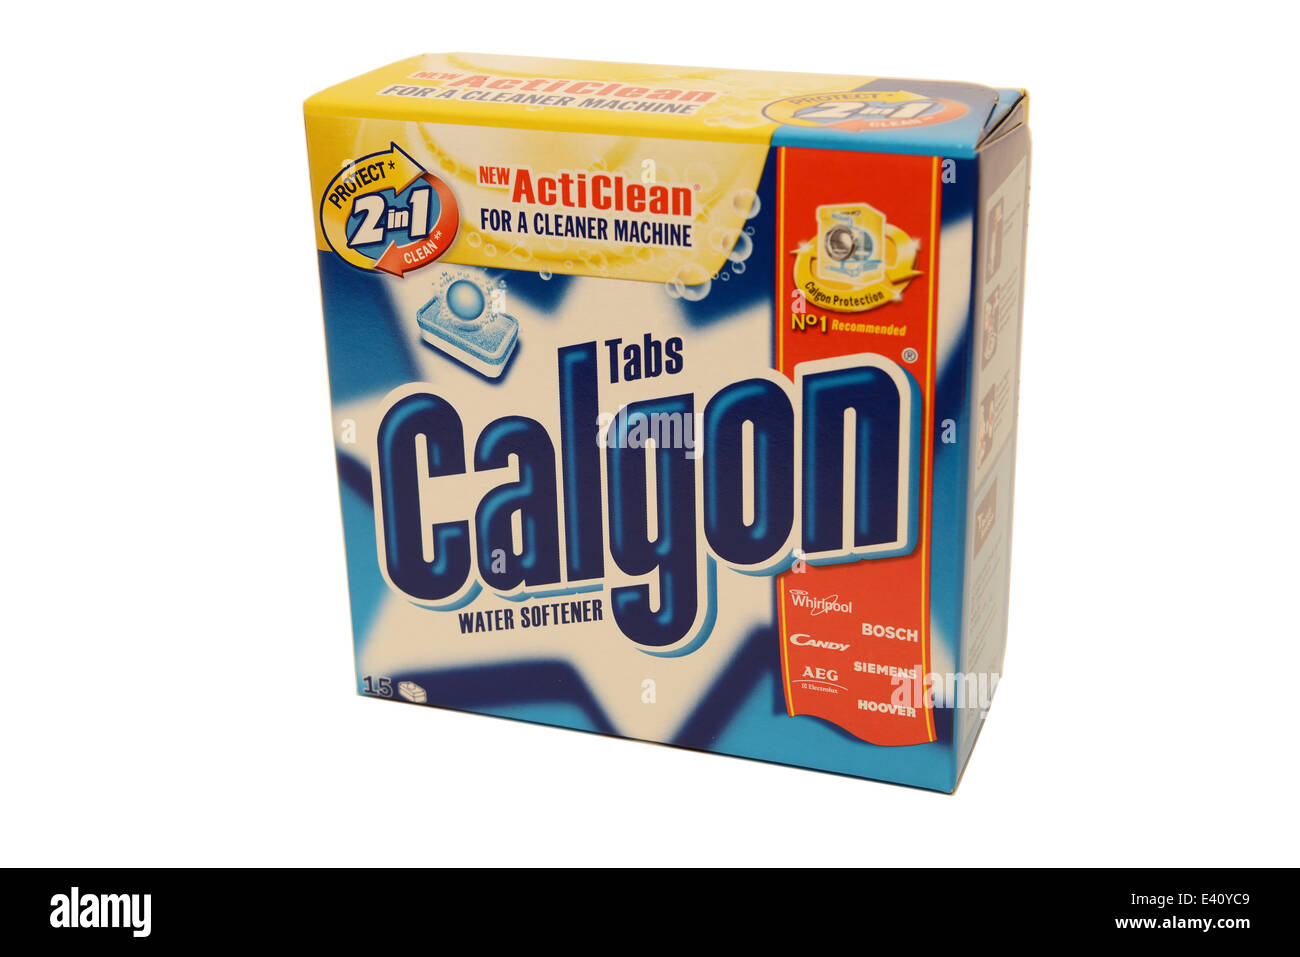 Calgon Antibacterial Water Softener Gel, Limpiador Paraguay